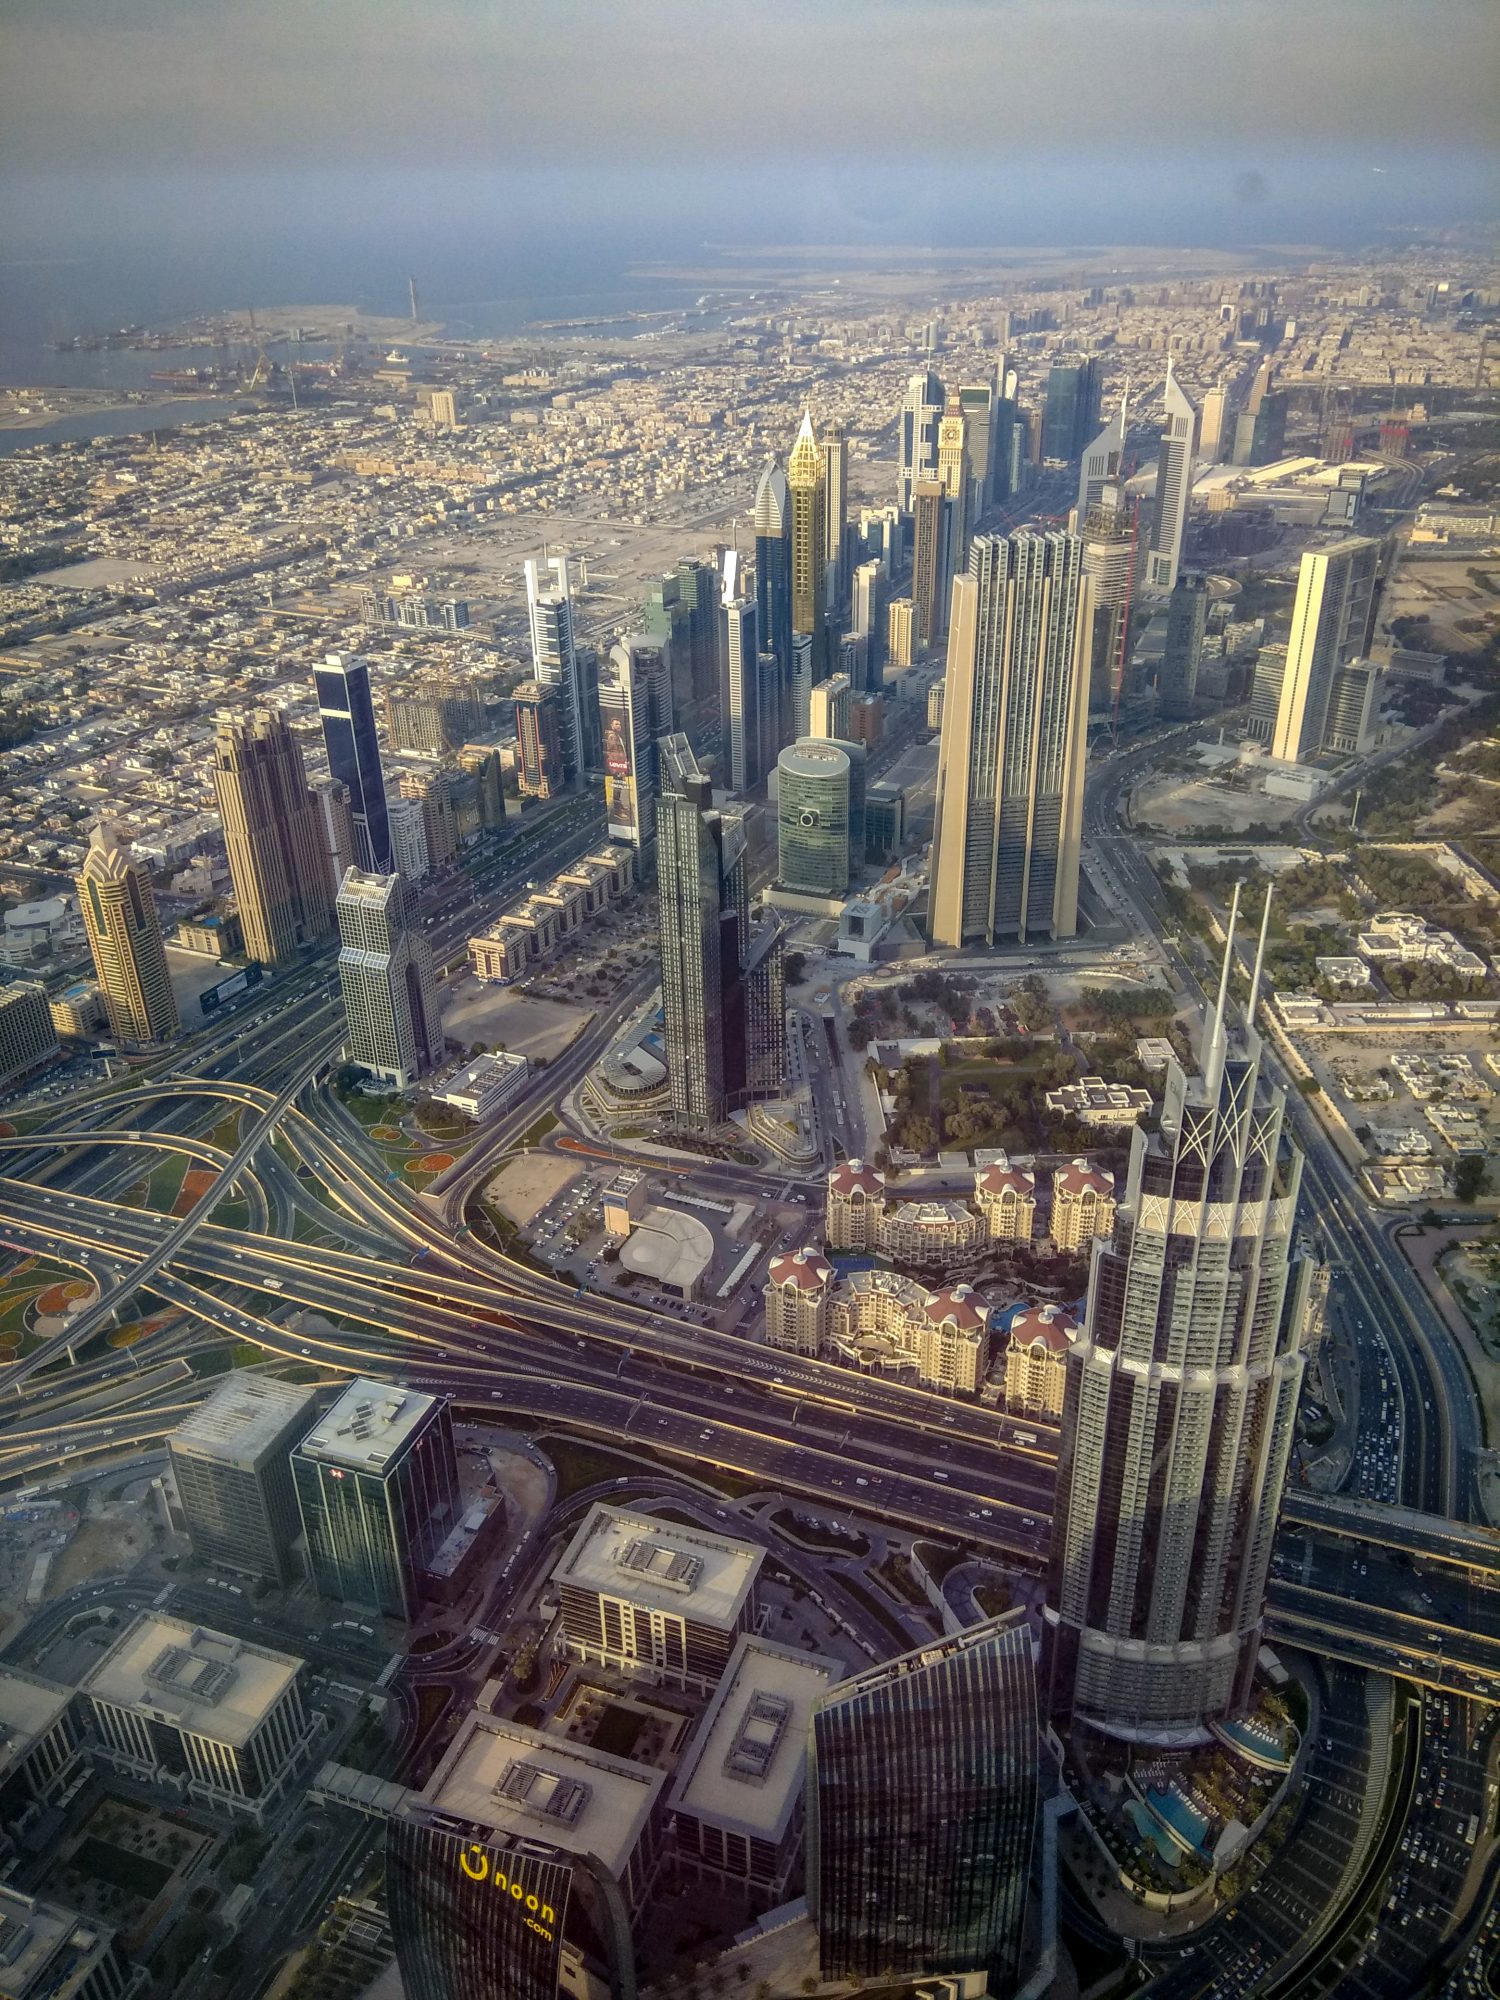 Views from At the Top, Burj Khalifa